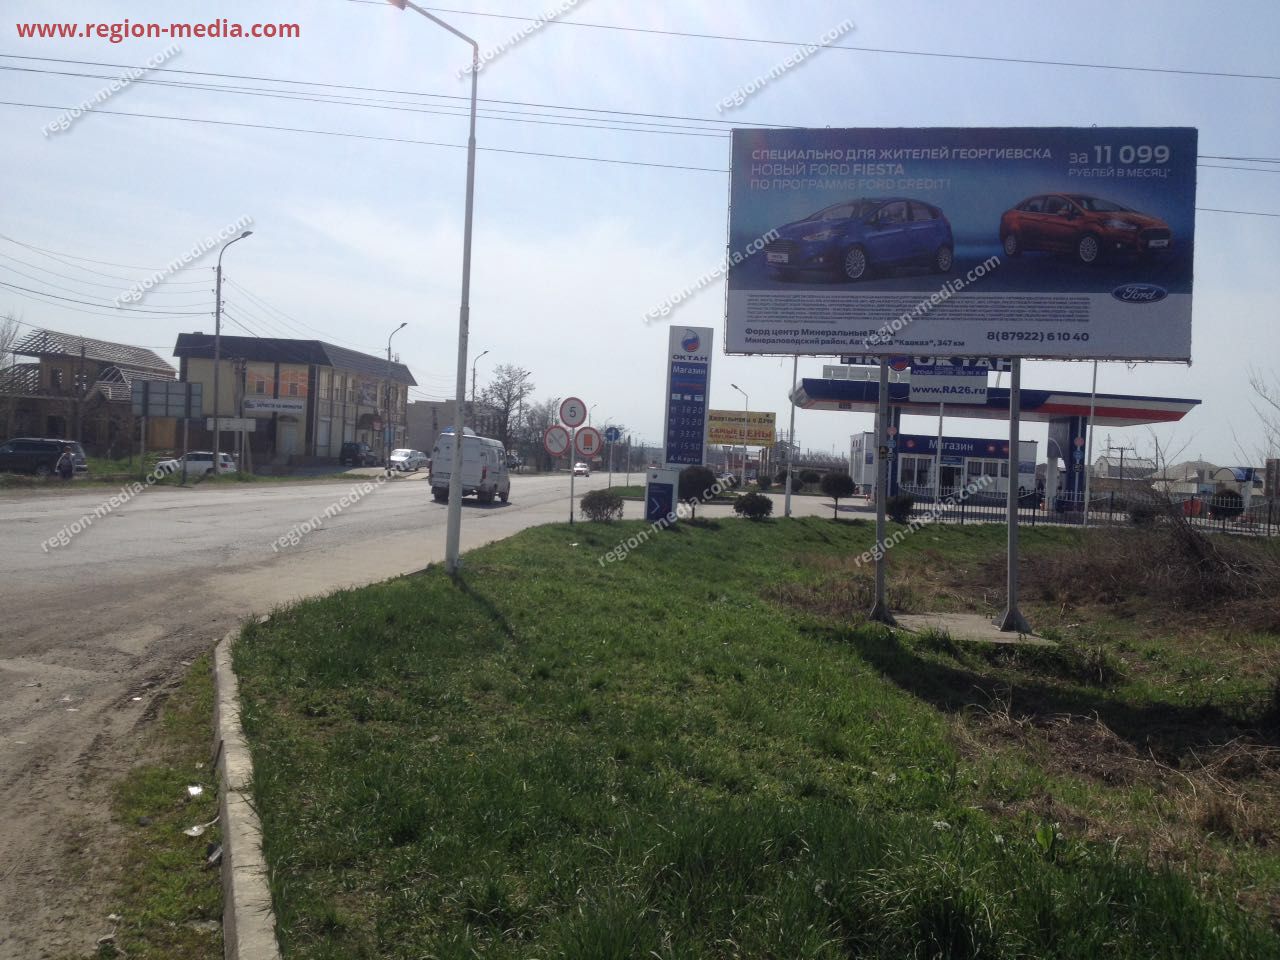 Размещение рекламы нашего клиента ООО «Форд» на щитах 3х6 в городе Георгиевск